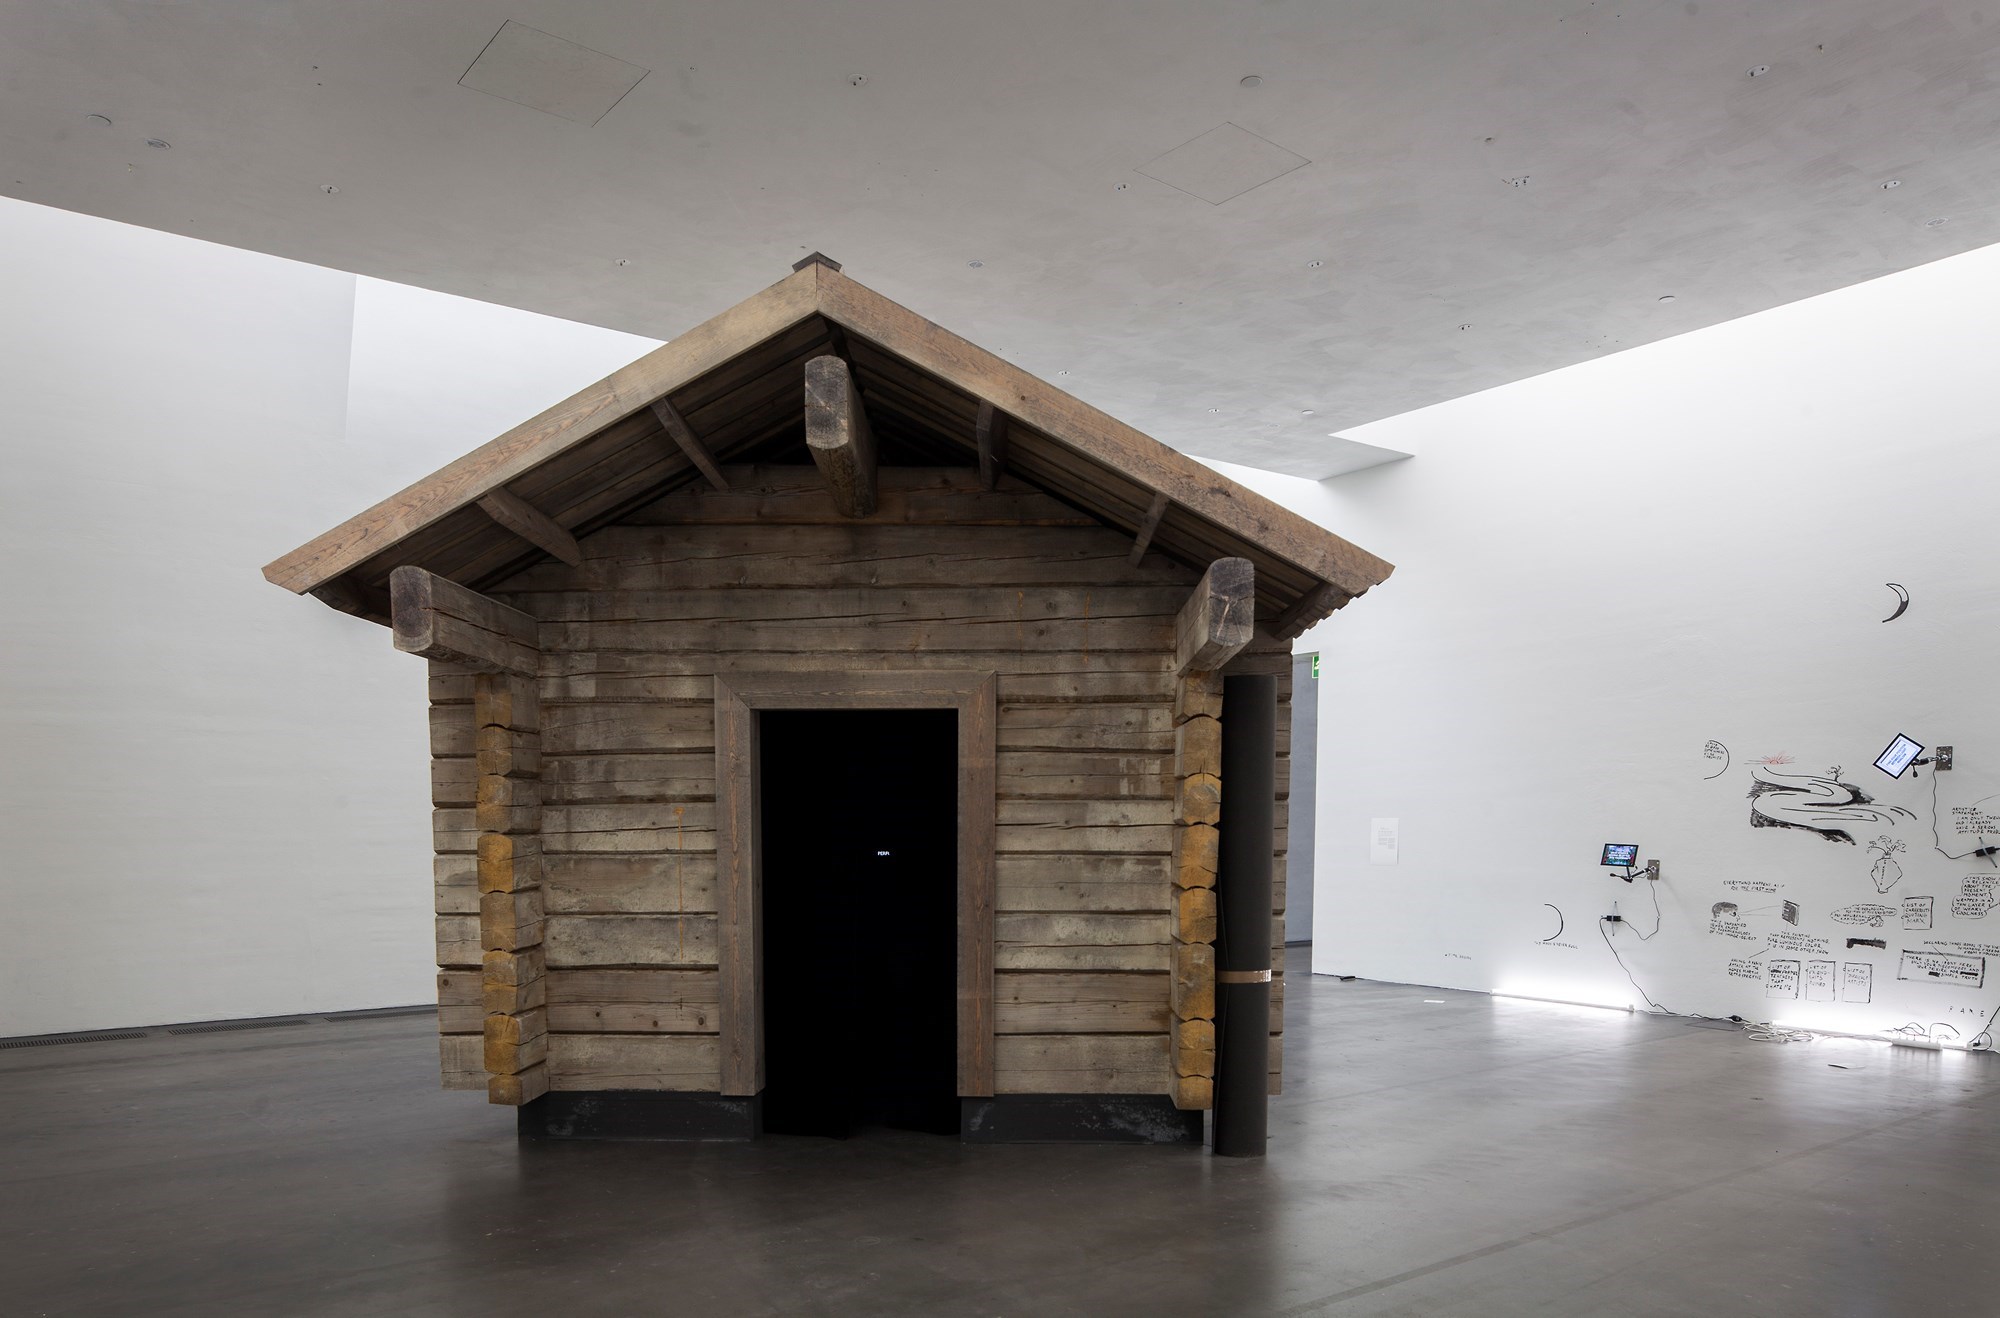 Shia Labeouf, AloneTogether, 2017. La capanna montata in una sala del Kiasma Museum